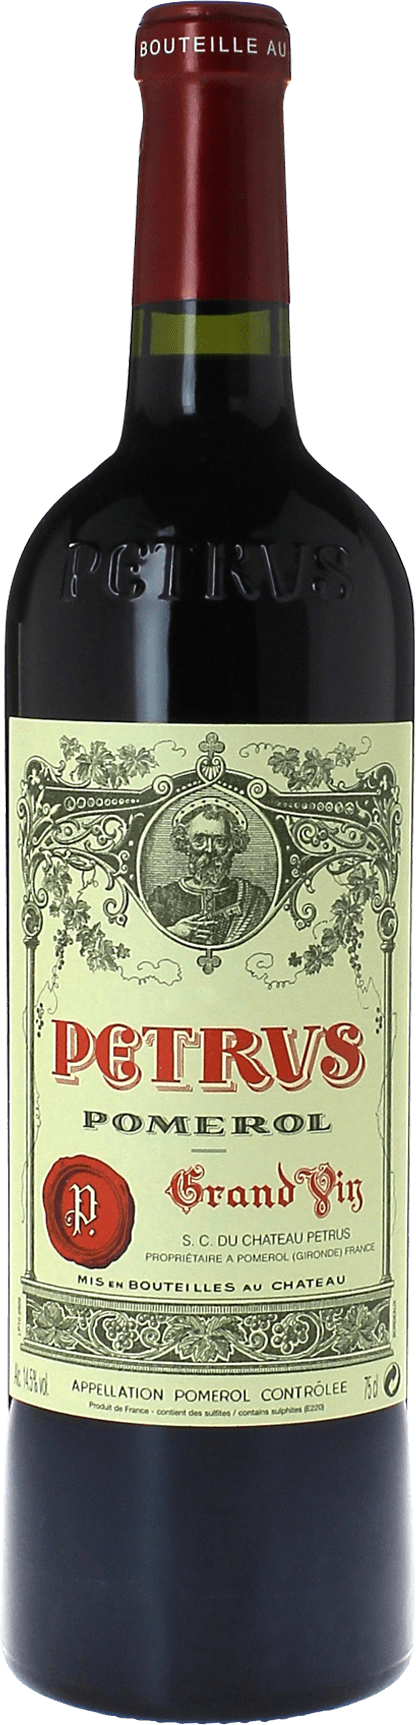 Petrus 1983  Pomerol, Bordeaux rouge